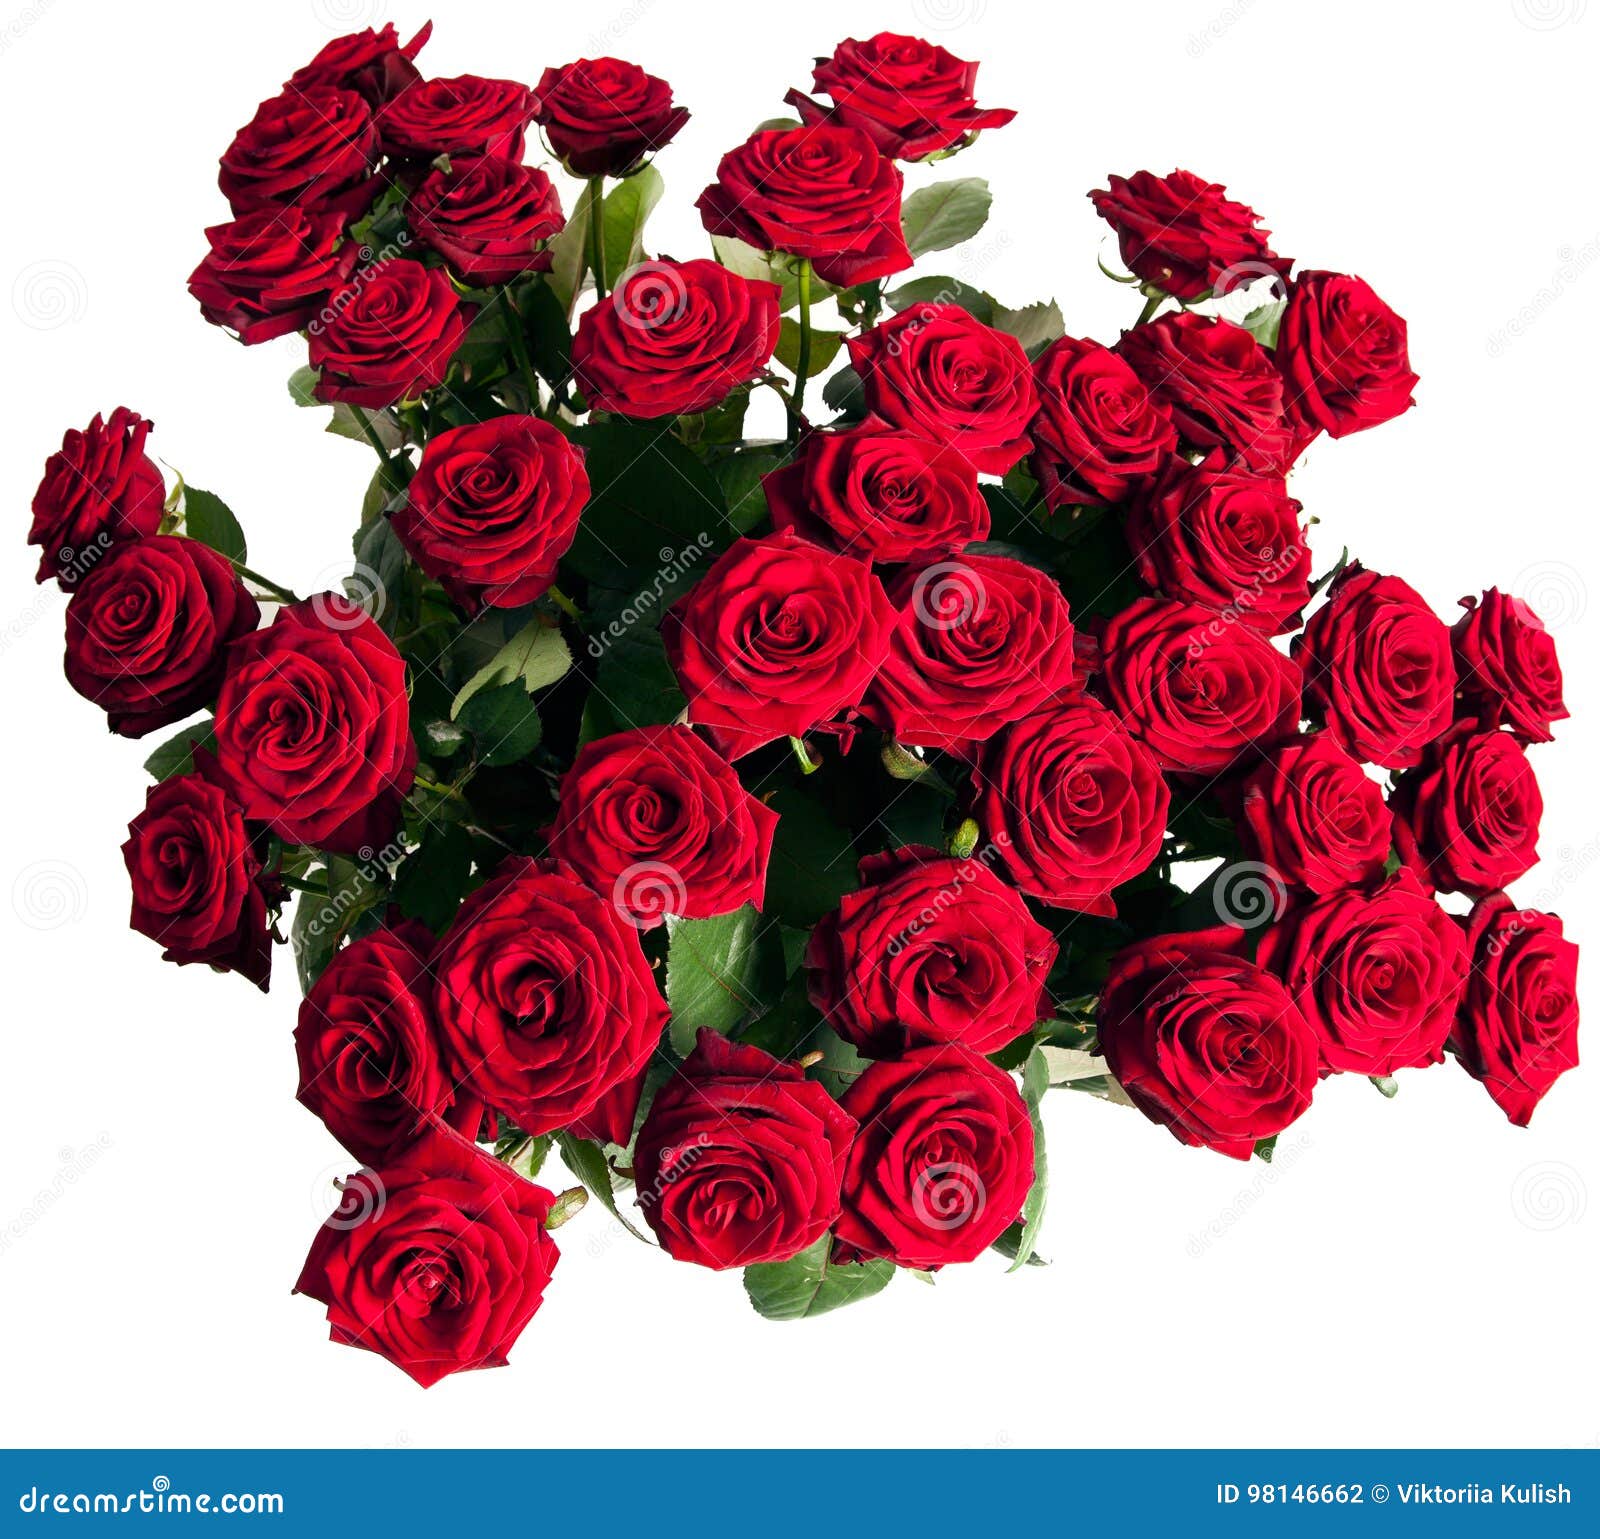 Asesor Saludo portón Muchas rosas rojas foto de archivo. Imagen de ramo, travieso - 98146662